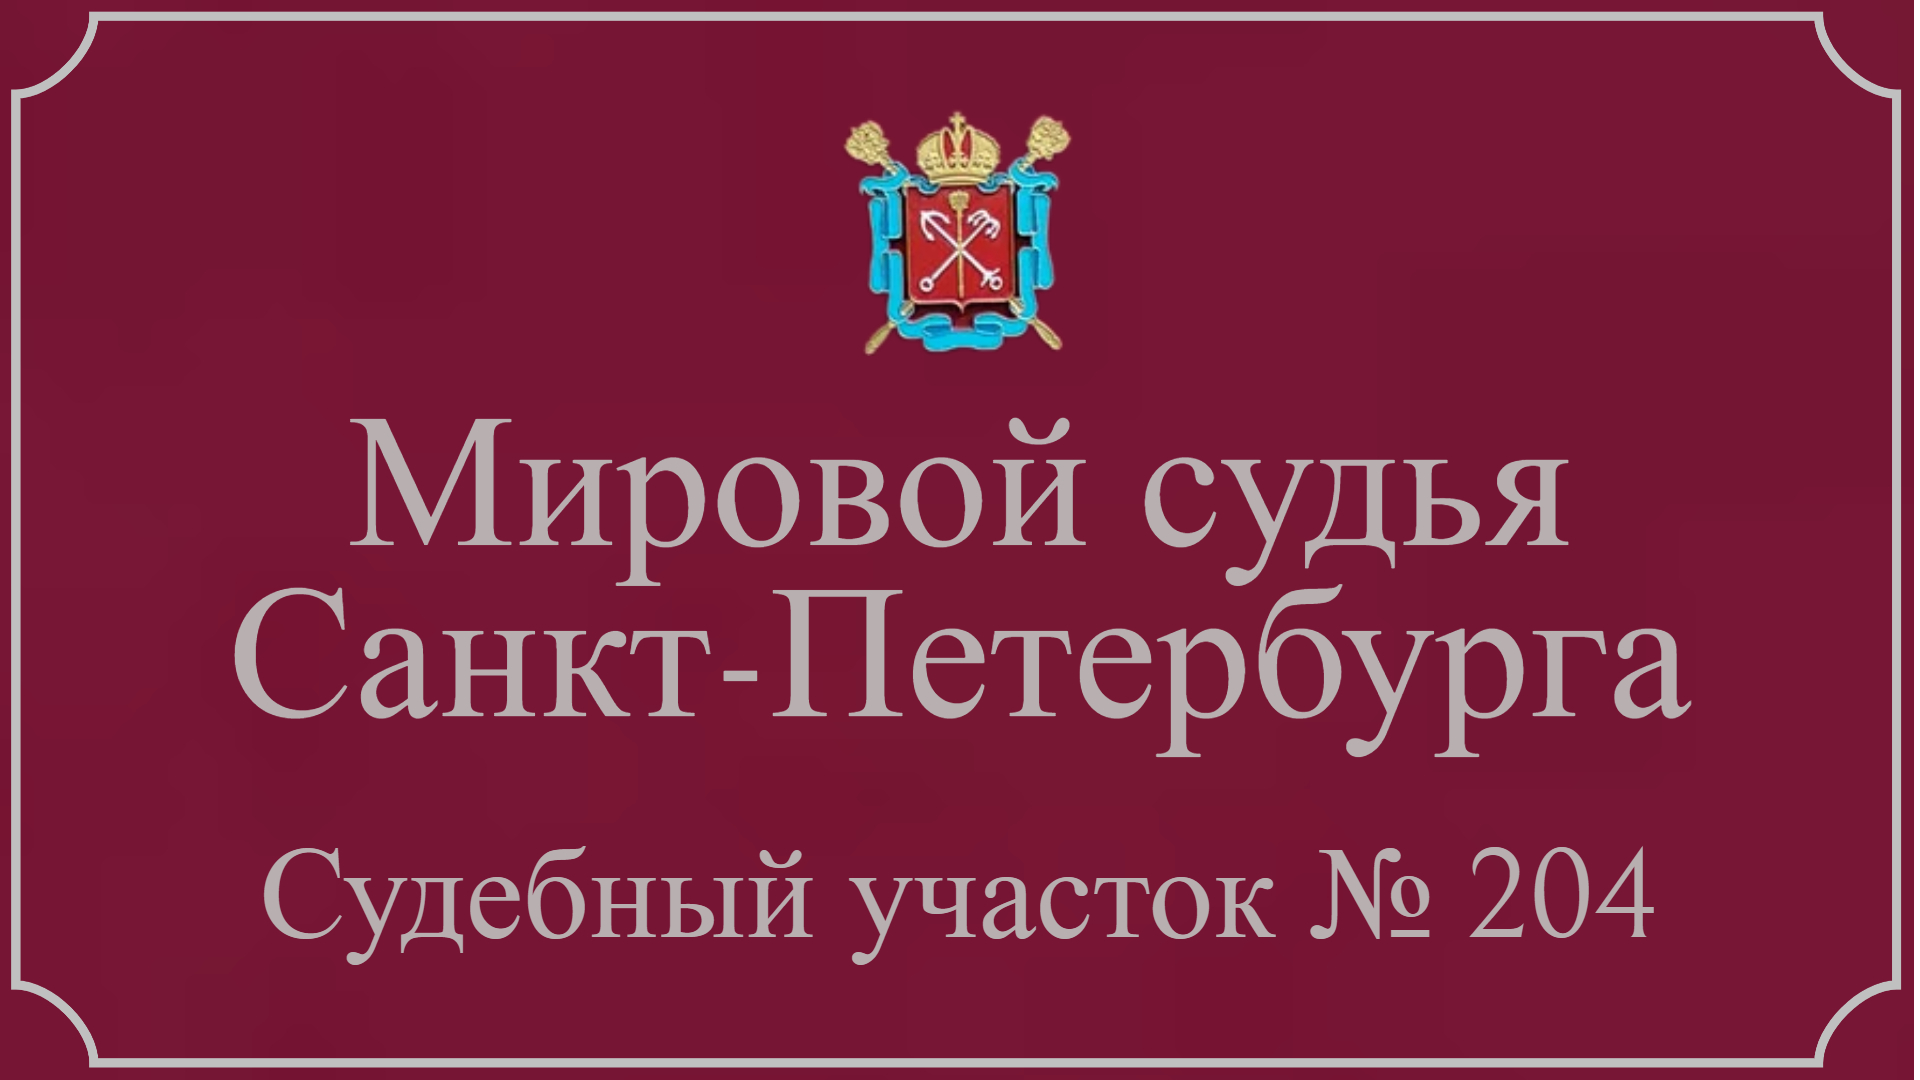 Информация по 204 судебному участку в Санкт-Петербурге.